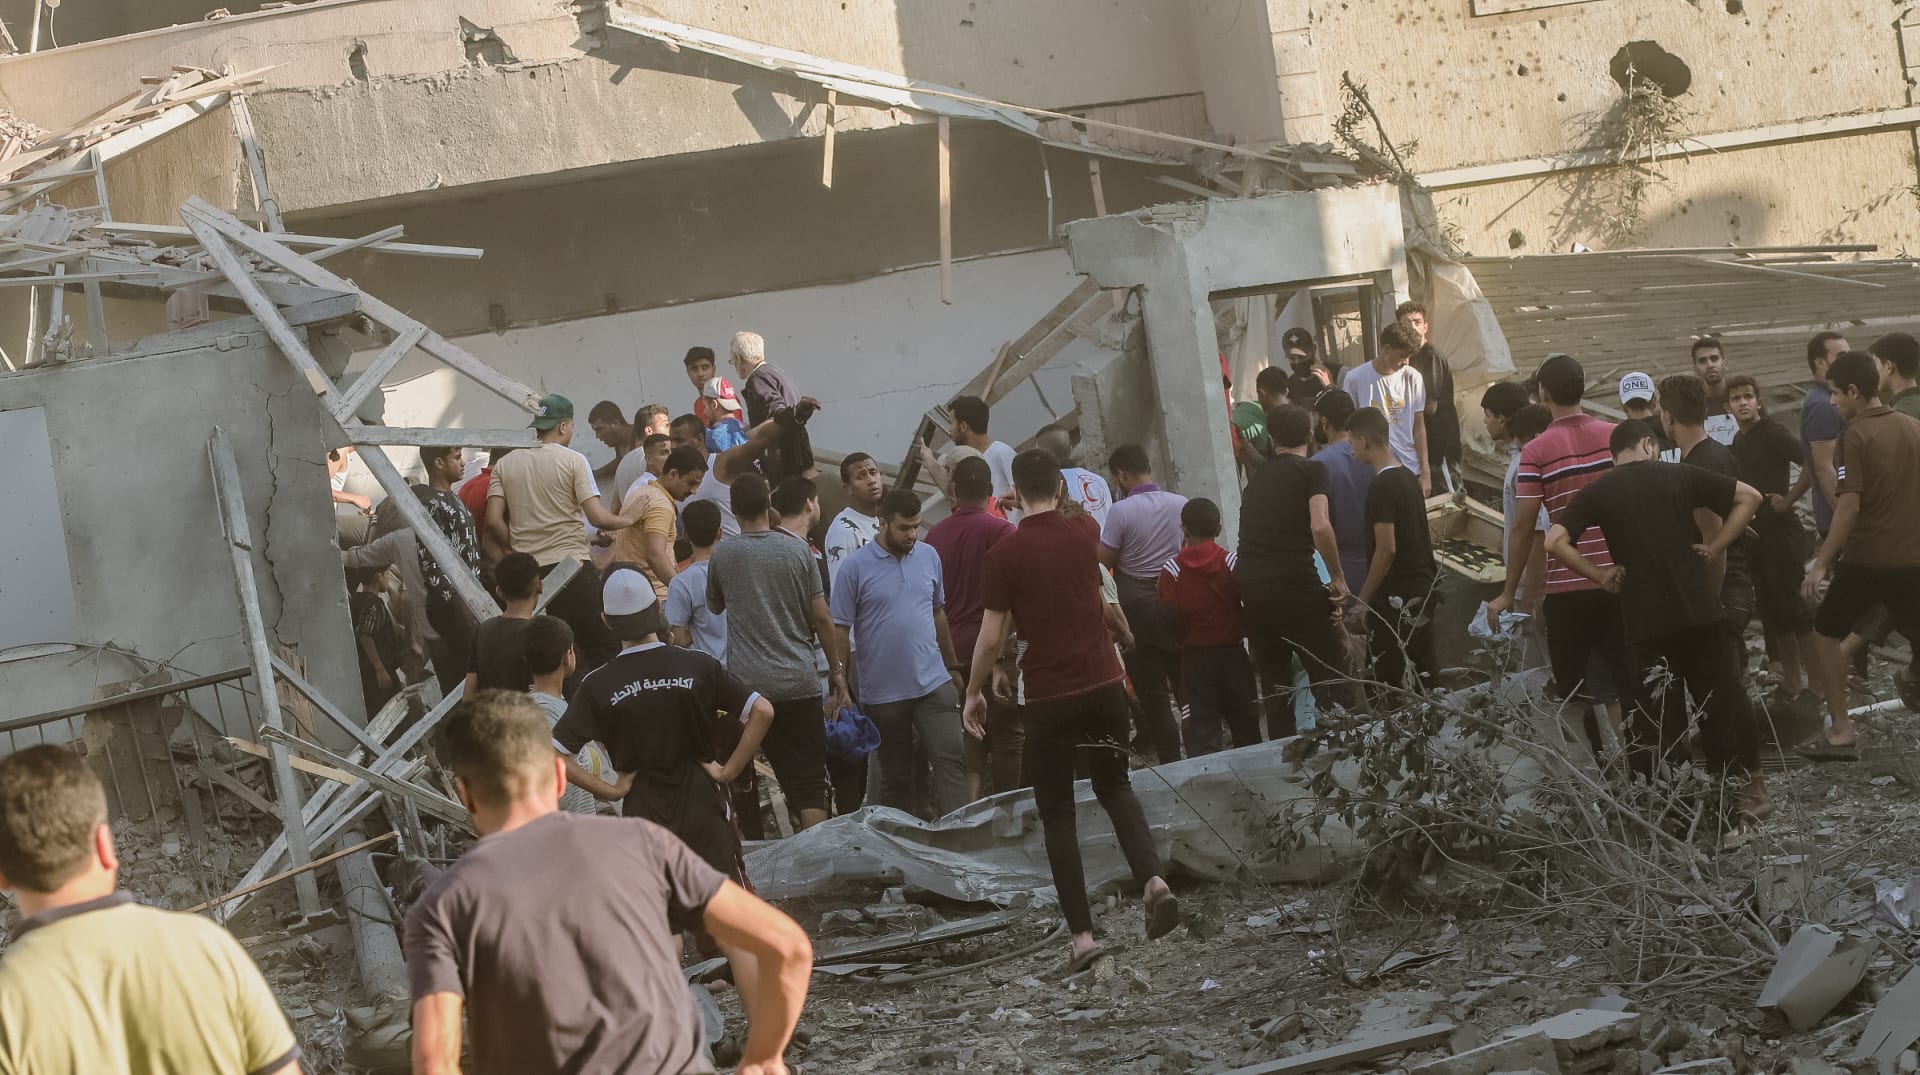 فريق إنقاذ وسكان يعملون  معًا لانتشال جثة من تحت أنقاض مبنى دمرته الغارات الجوية الإسرائيلية